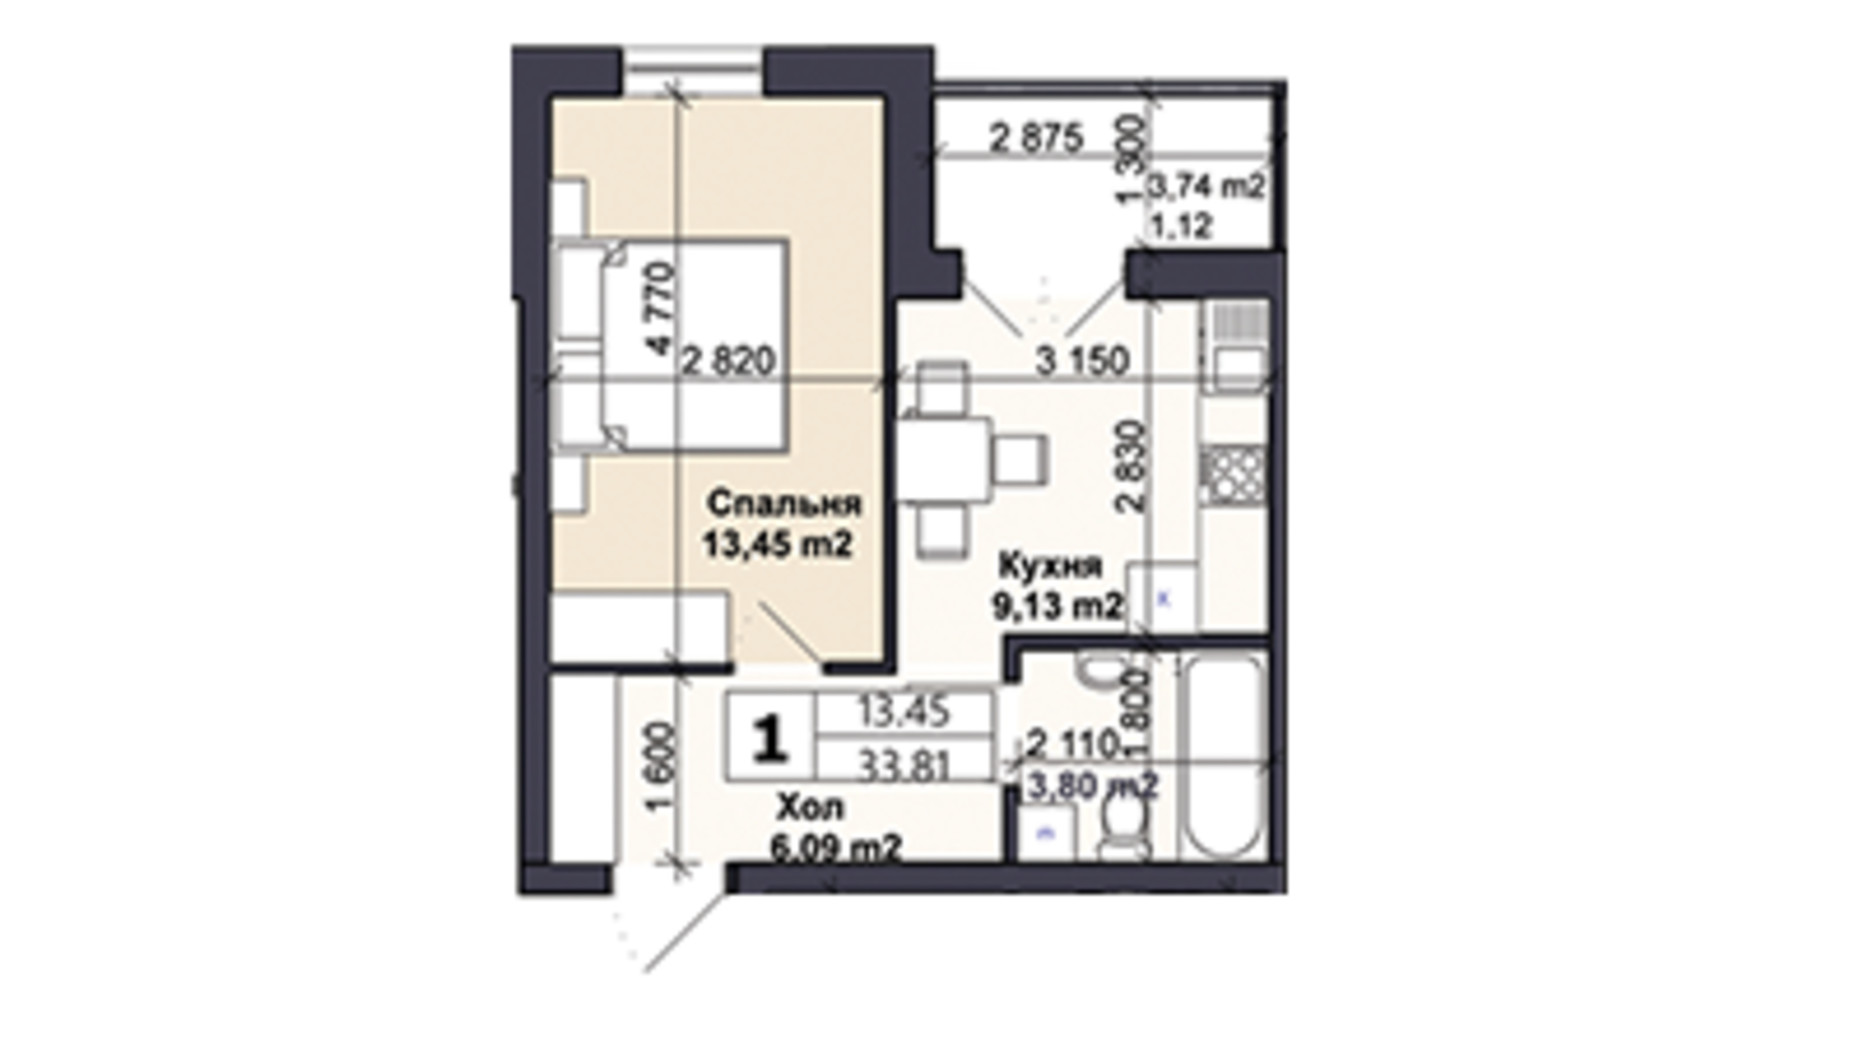 Планировка 1-комнатной квартиры в ЖК Саме той 33.81 м², фото 623282